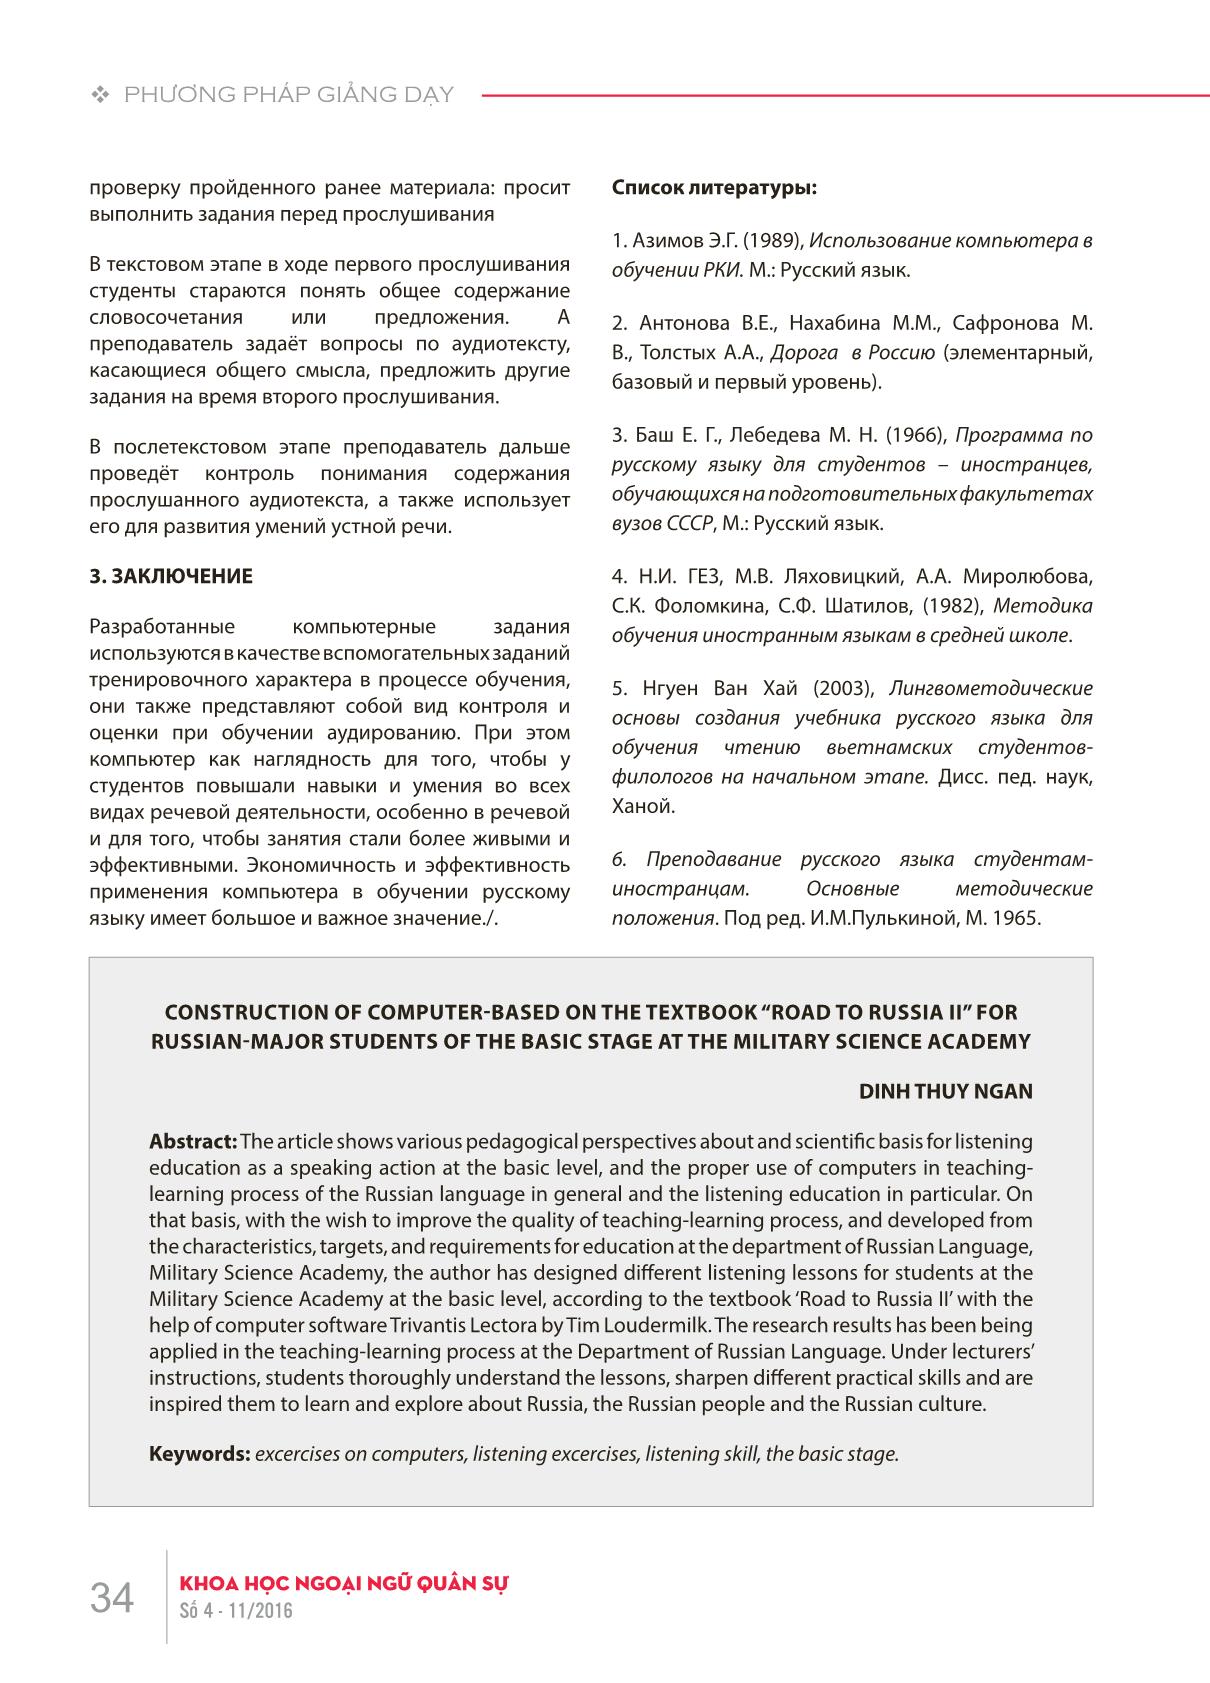 Xây dựng bài tập nghe trên máy tính cho học viên tiếng Nga giai đoạn cơ sở tại Học viện Khoa học Quân sự theo giáo trình “Đường đến nước Nga II” trang 6